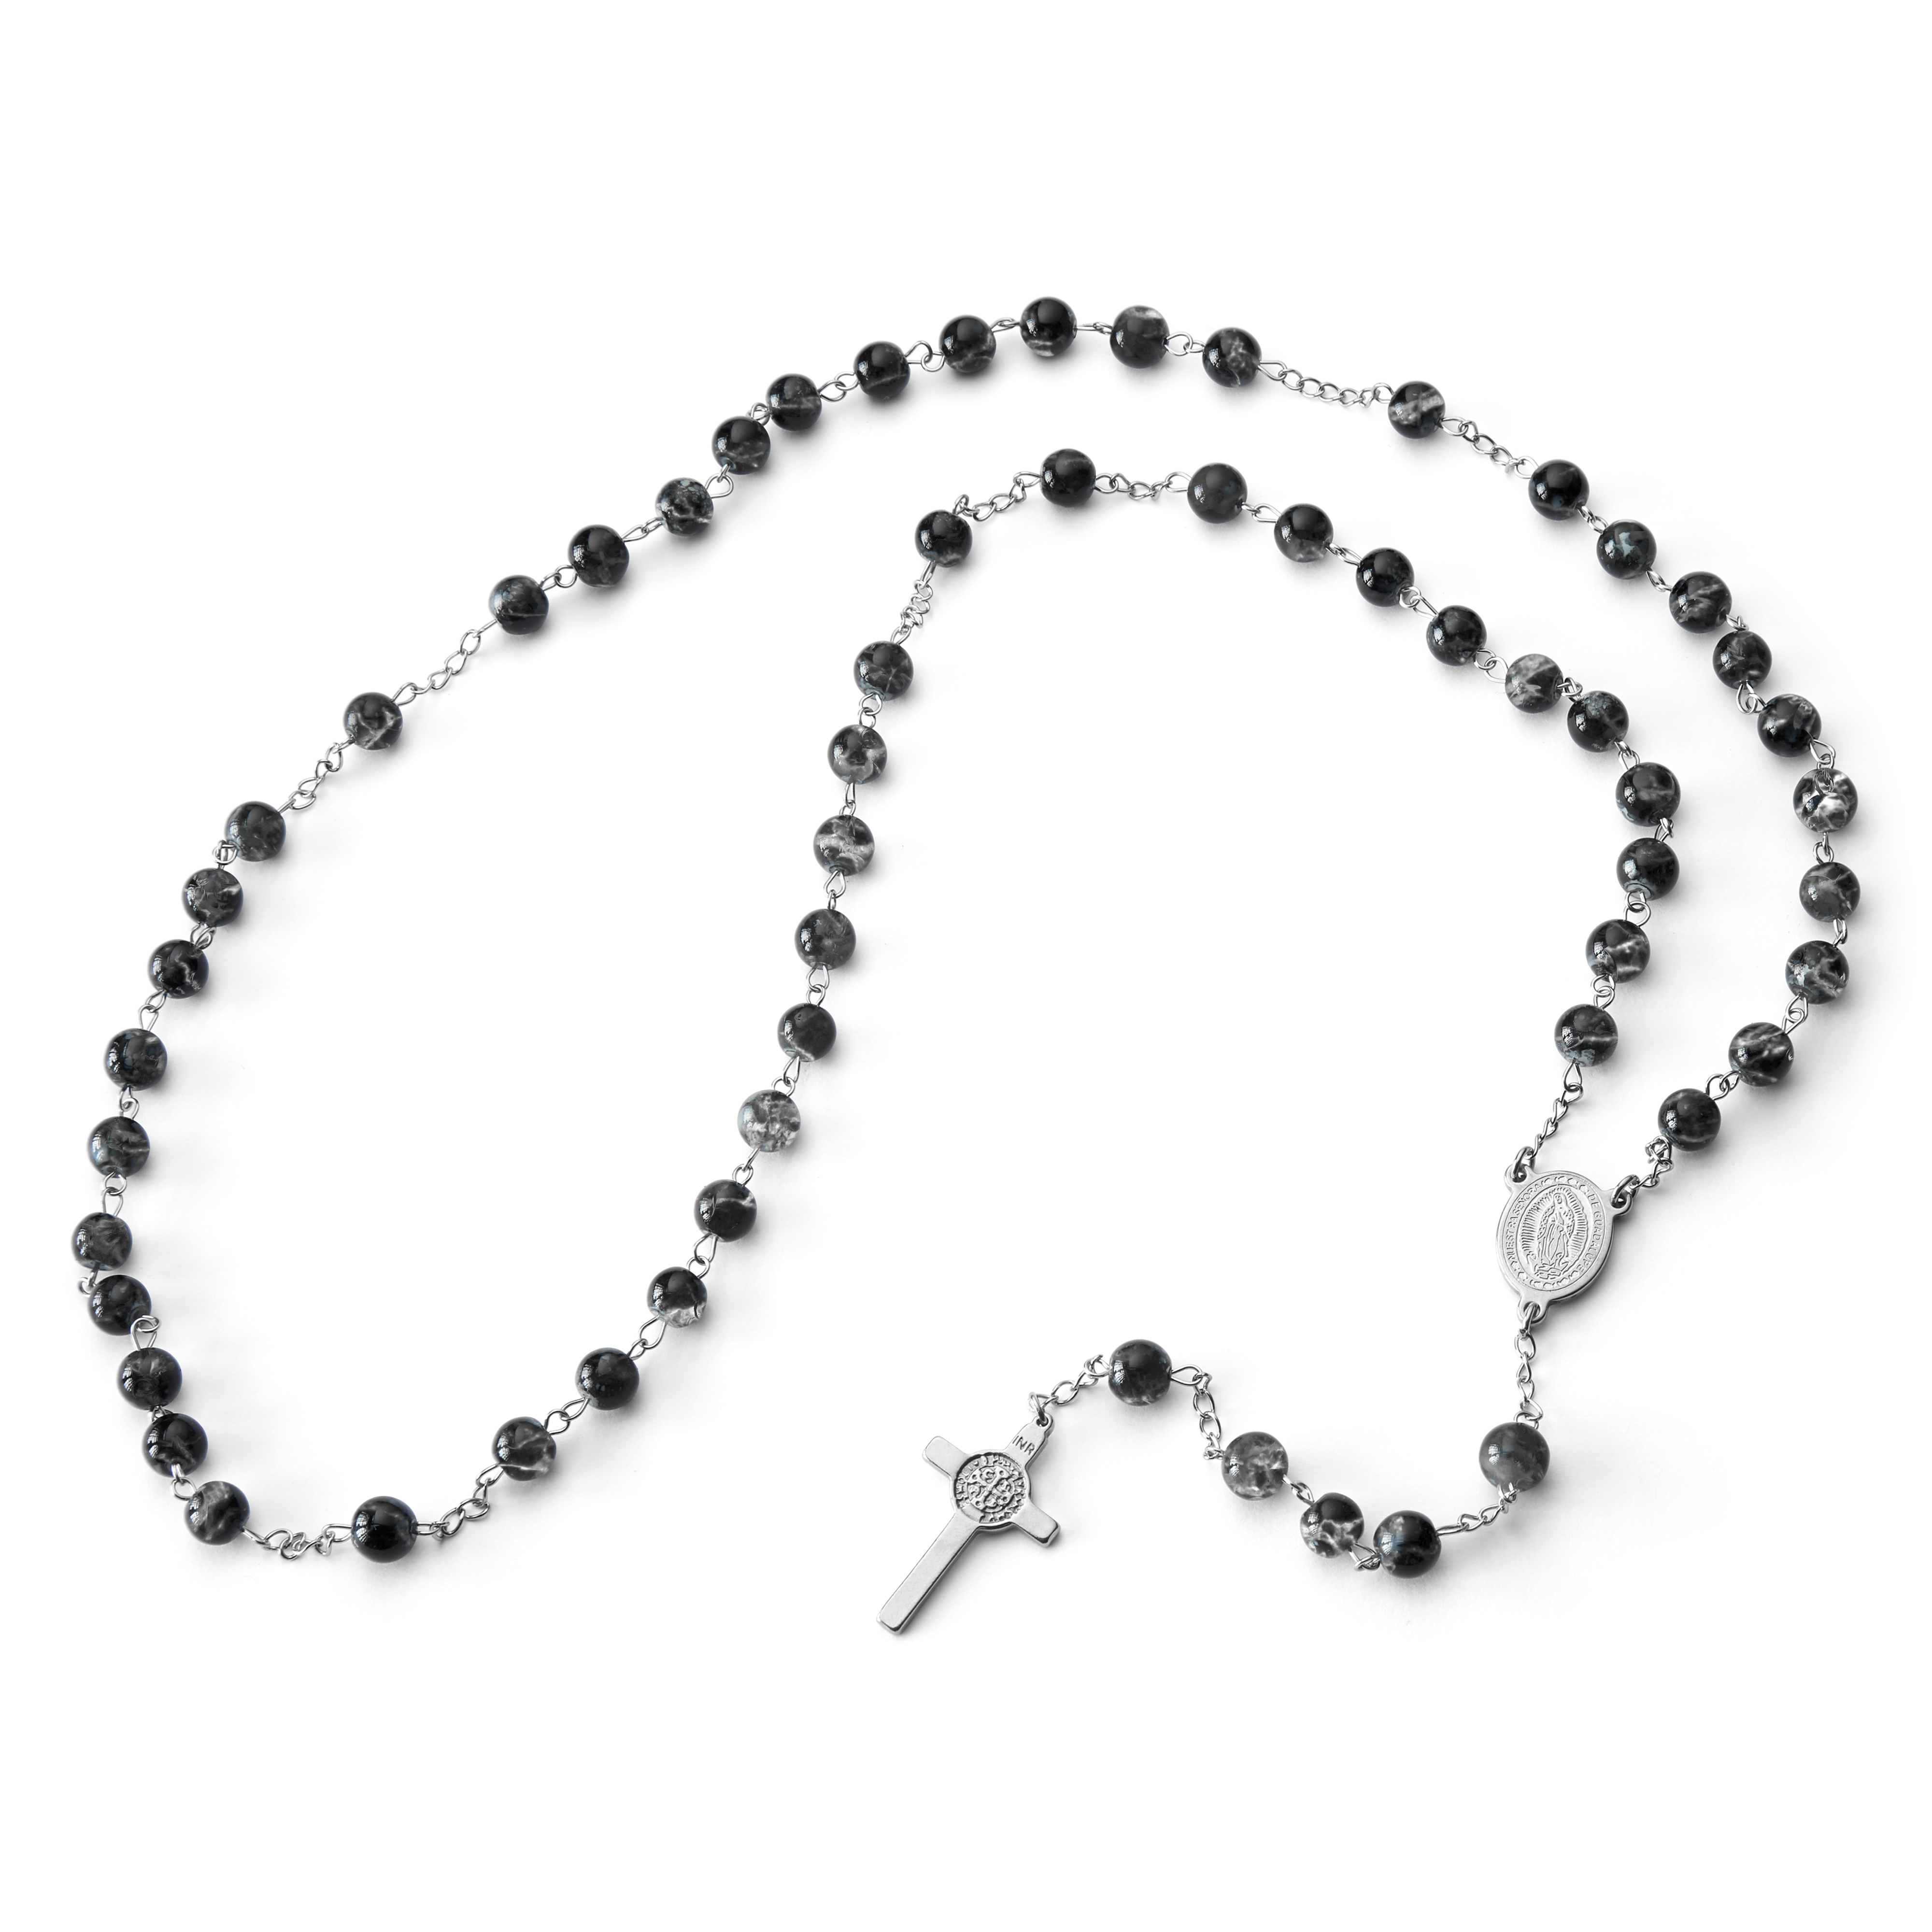 Rnivida Black Rosary Beads Necklace Miraculous India | Ubuy